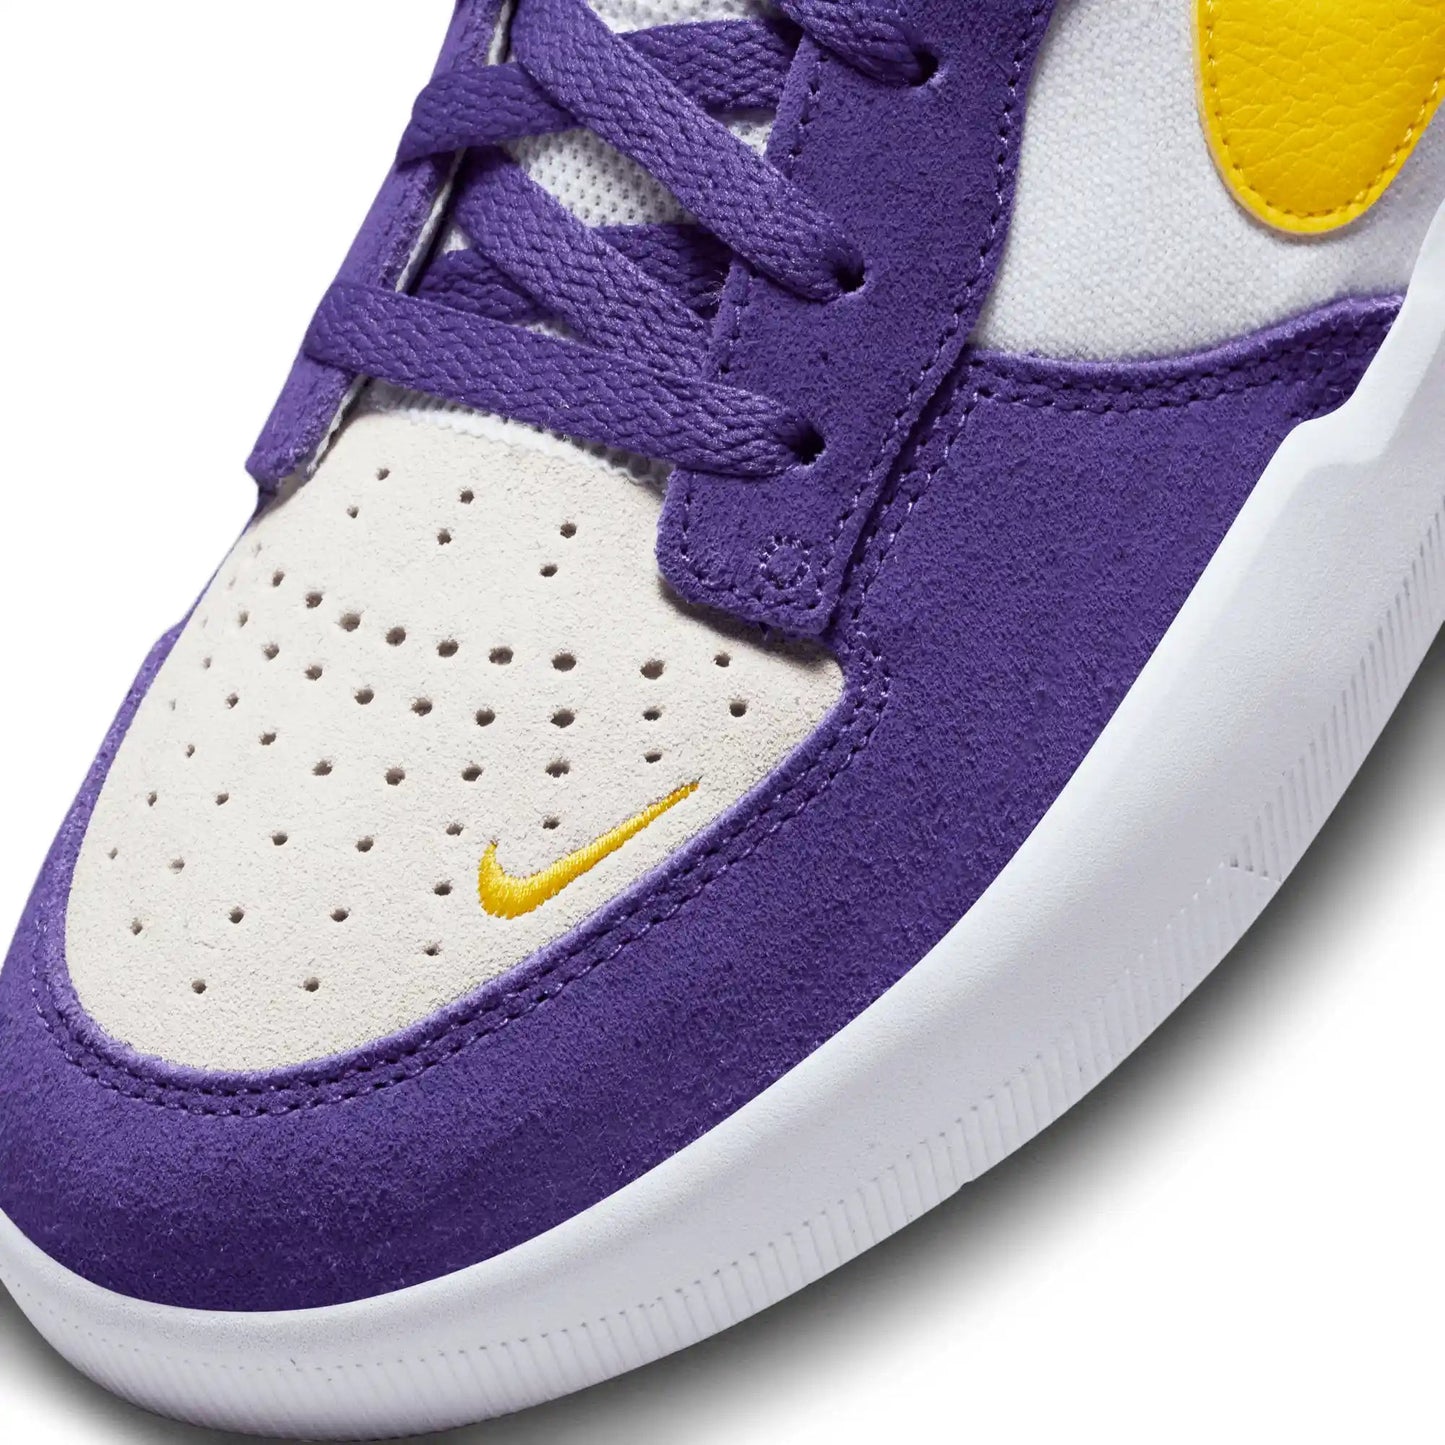 Nike SB Force 58, court purple/amarillo-white-white - Tiki Room Skateboards - 4